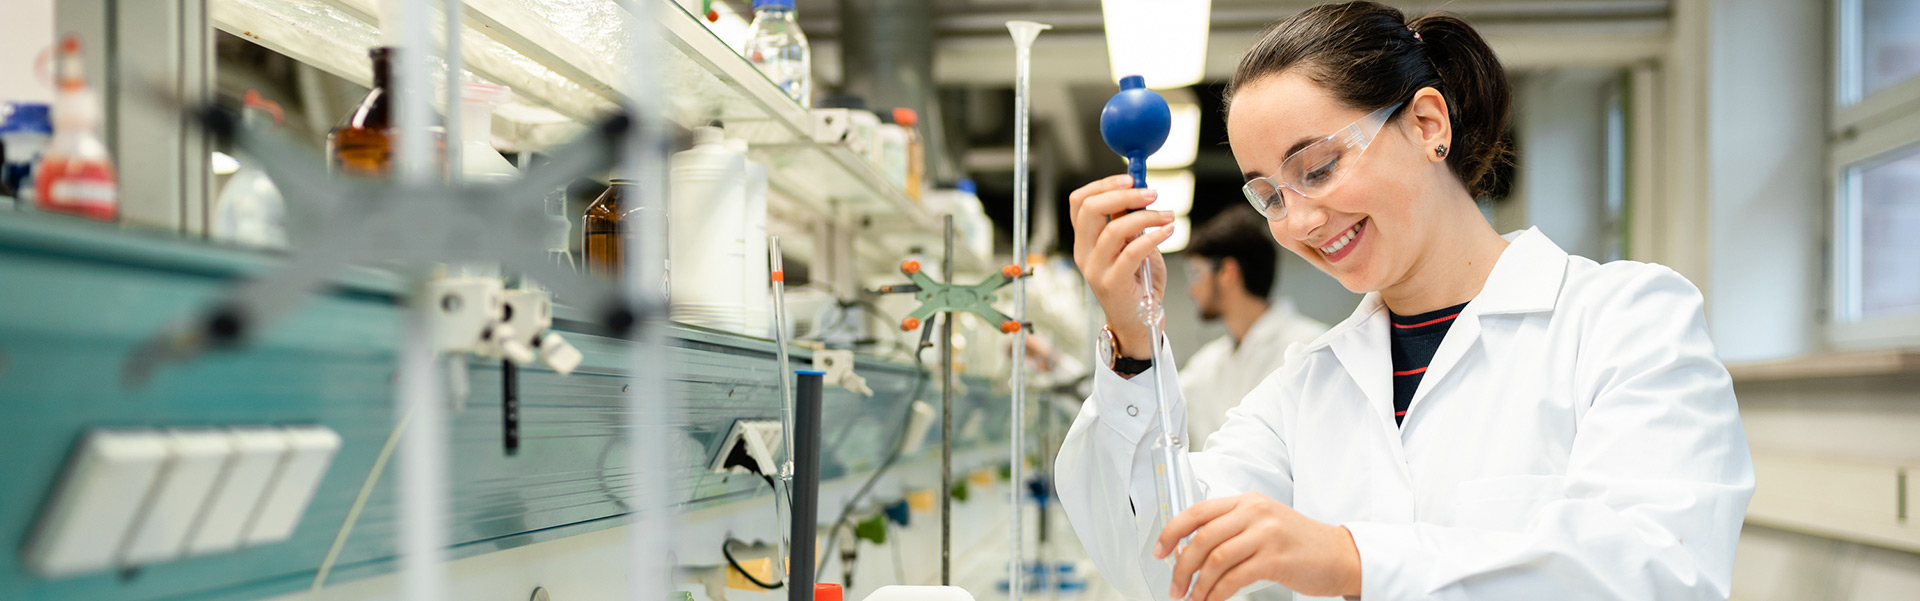 Bachelor Angewandte Naturwissenschaften Studentin mit Pipette in der Hand im Chemie Labor.